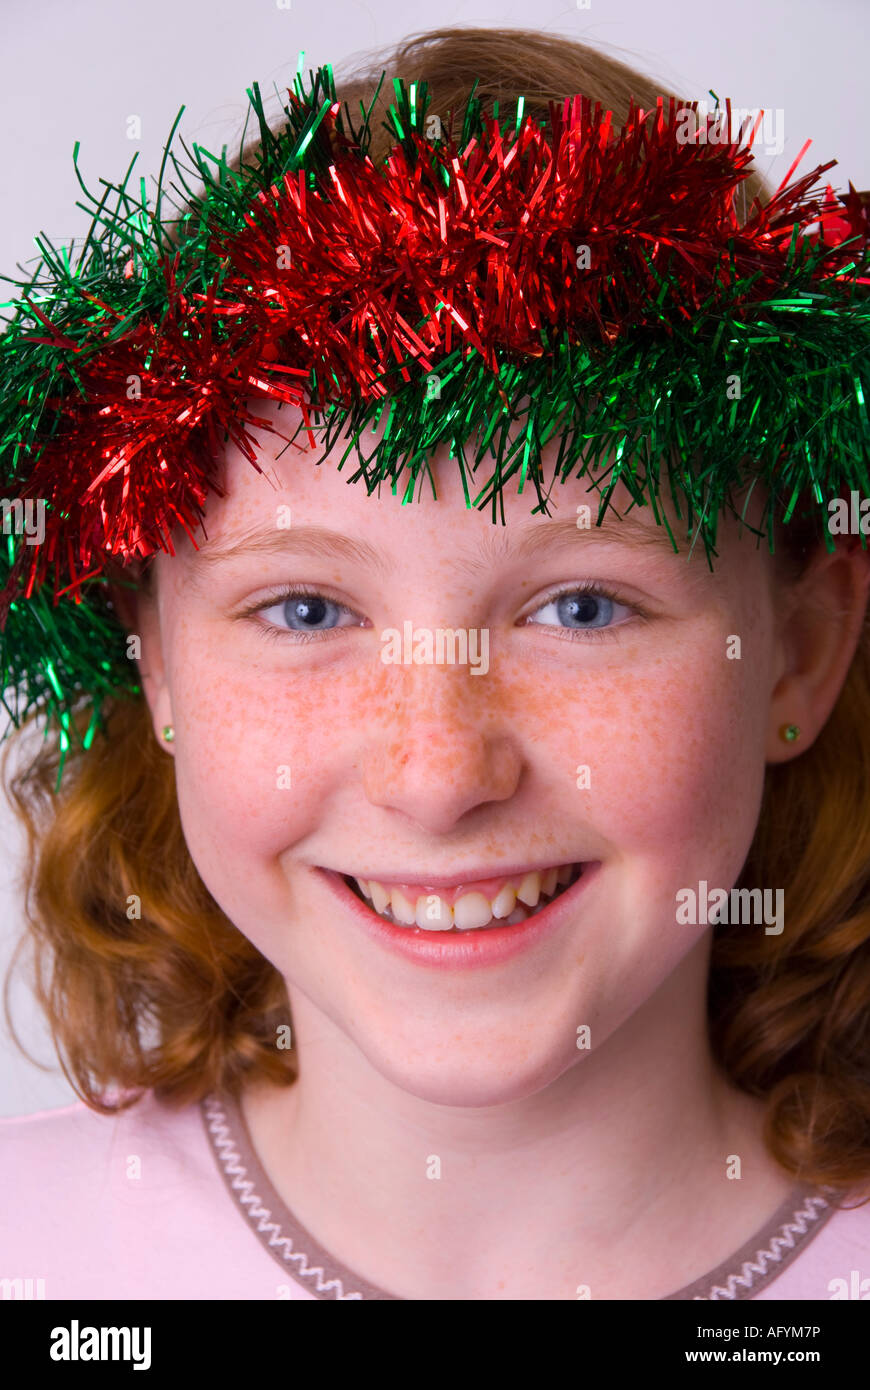 Eine lächelnde blue eyed Sommersprosse konfrontiert 11 Jahres altes Mädchen irischer Herkunft Weihnachts-Lametta im Haar tragen Stockfoto